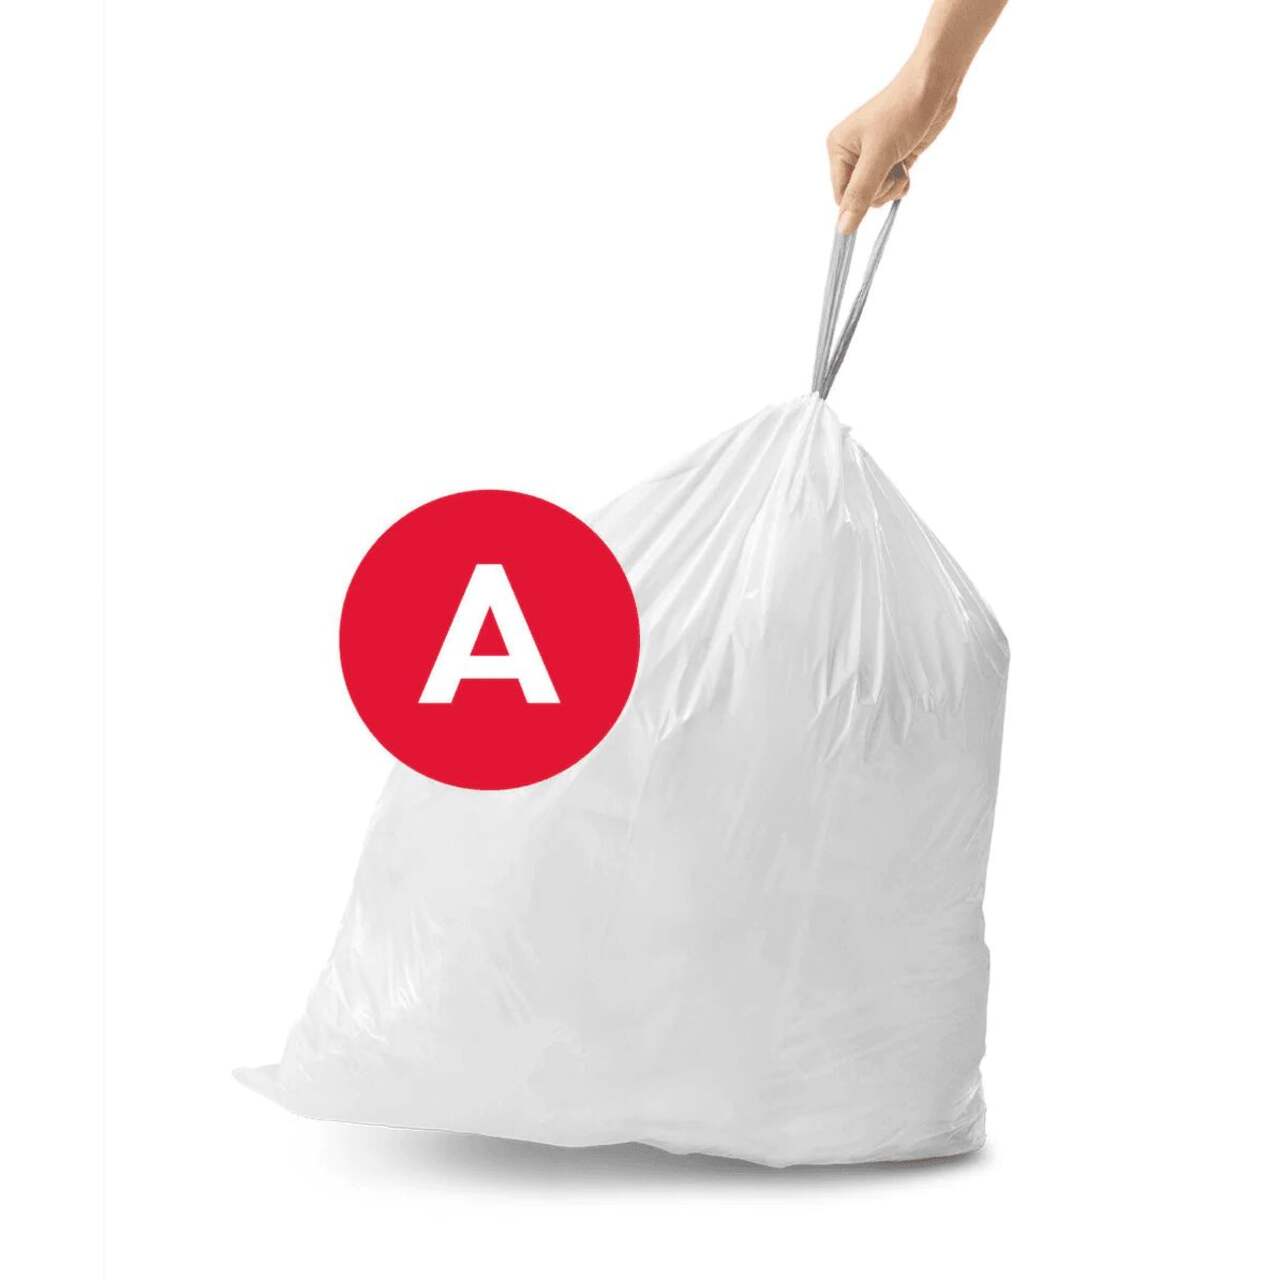 Repl. Simplehuman A-Style 4.5L, 1.2 Gallon Garbage Bag (30PK)